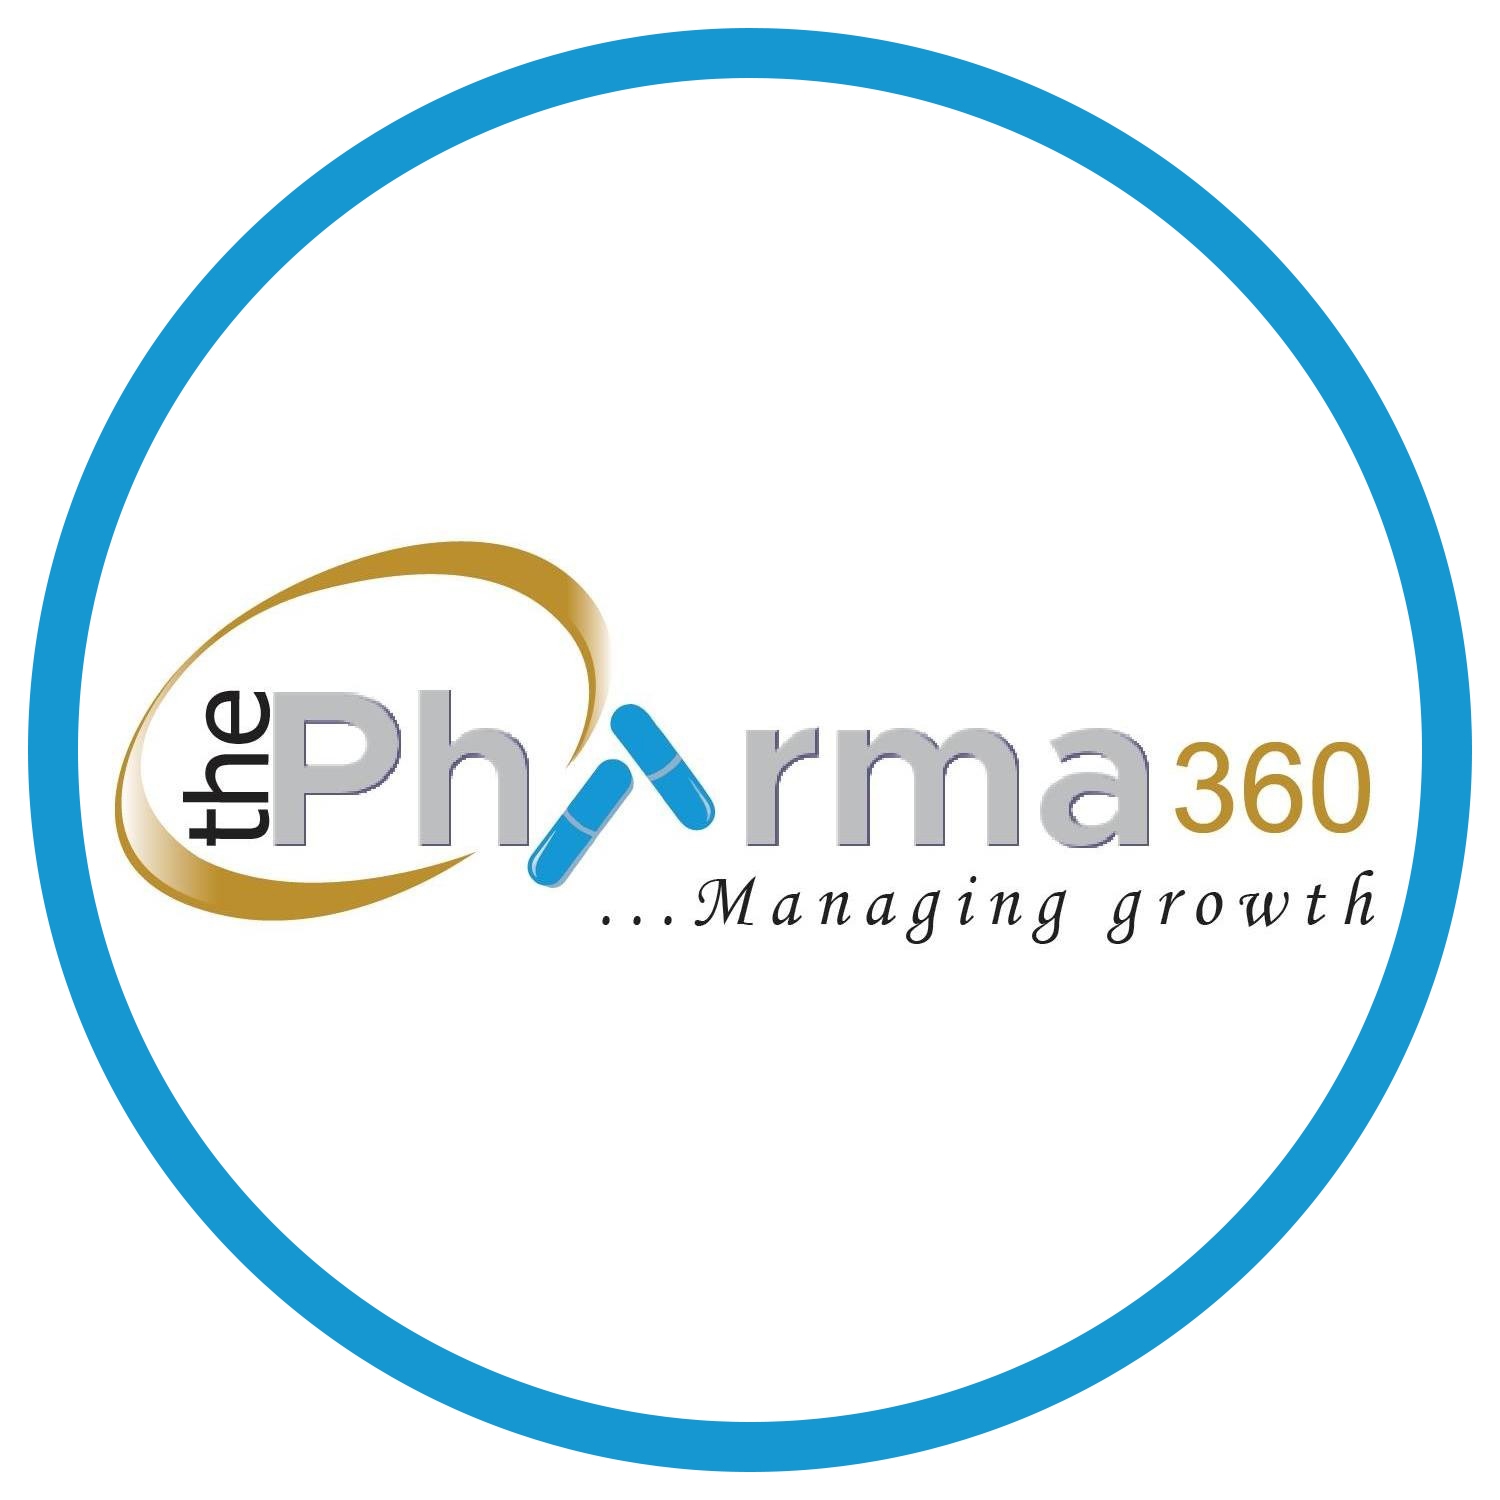 The Pharma 360